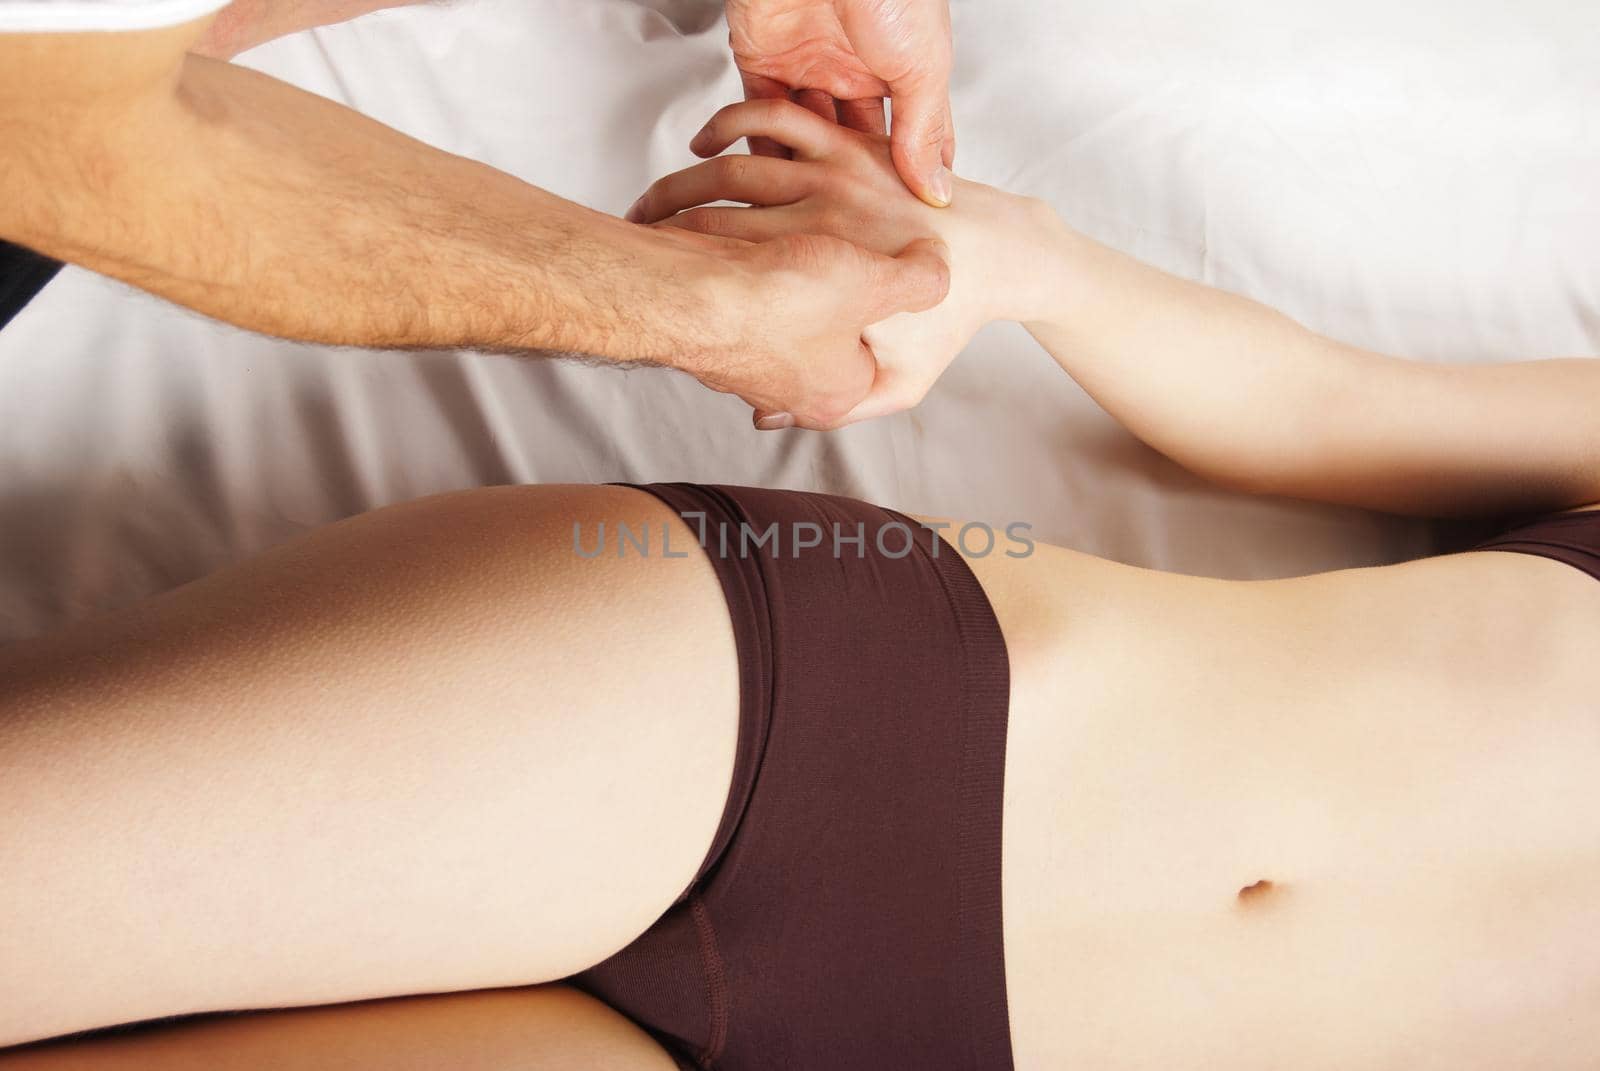 girl getting a massage - hands massaging her hand - A pretty woman getting a hand massage